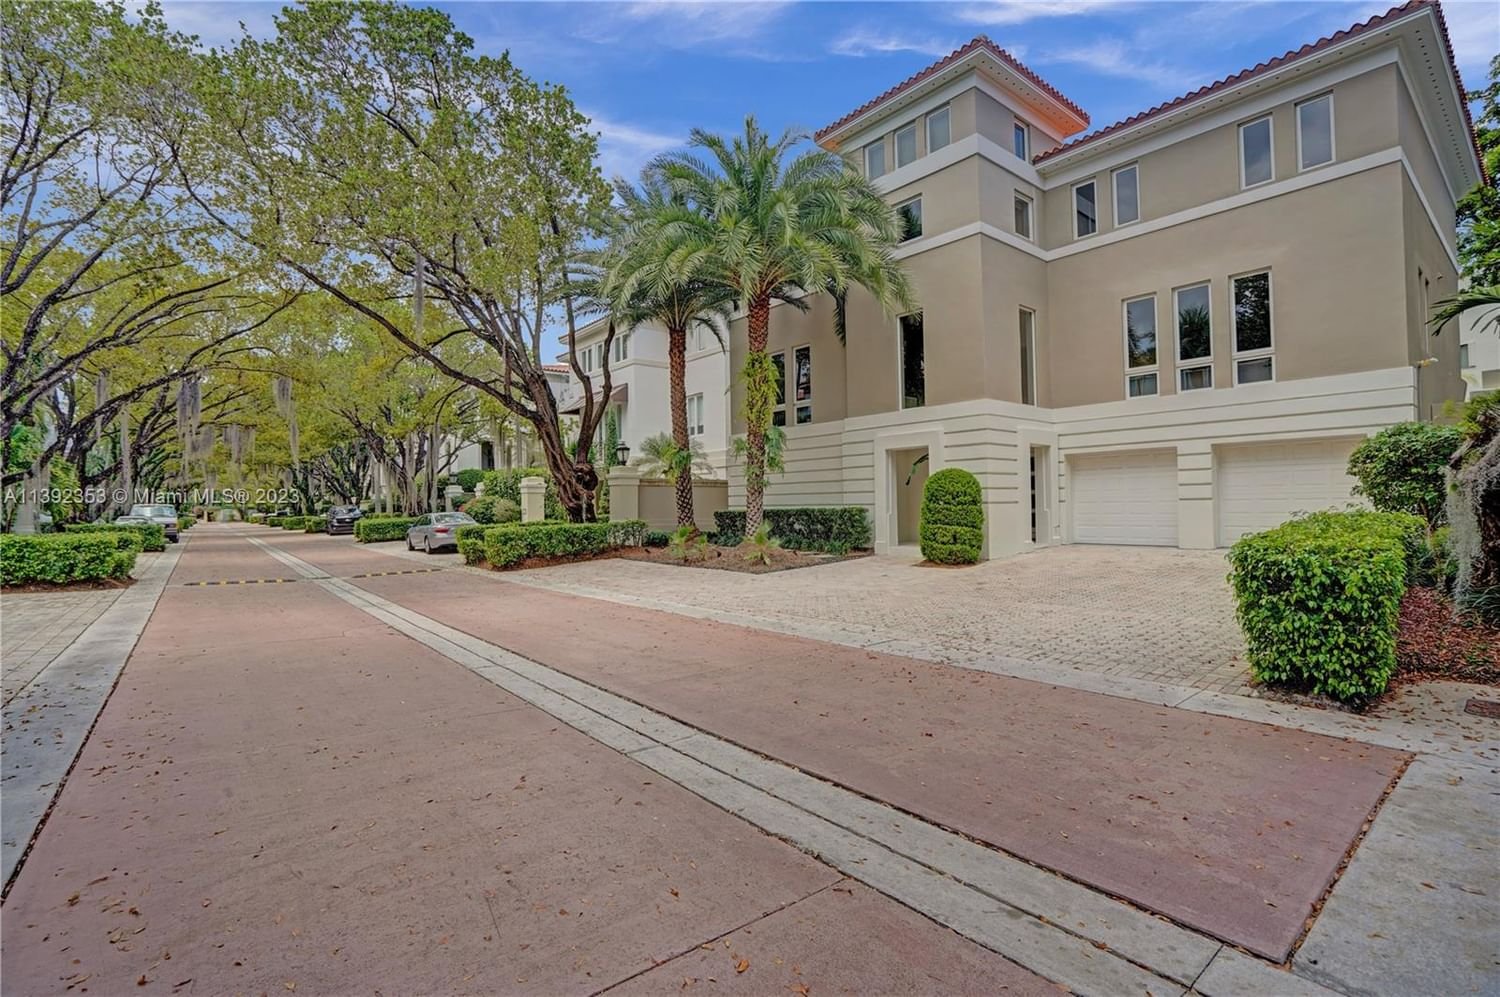 Real estate property located at 3521 Bayshore Villas Dr, Miami-Dade County, Miami, FL